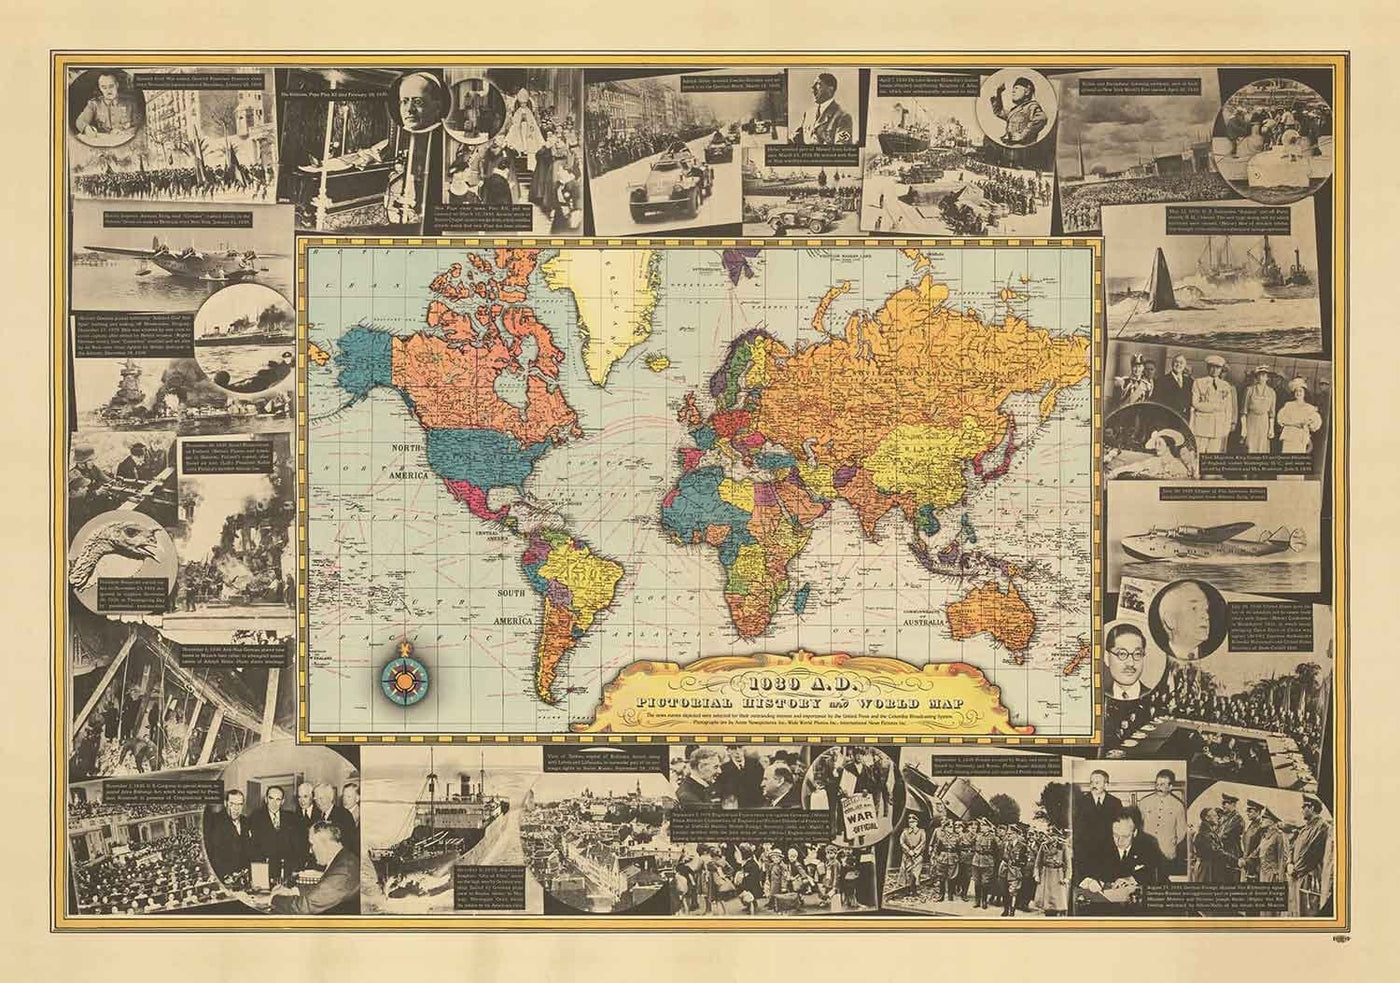 Weltkriegs -Weltkarte, 1939 - Alte historische Ereignisse - Hitler in Polen eindringen, Verbündete erklären den Zweiten Weltkrieg, Papst im Sterben